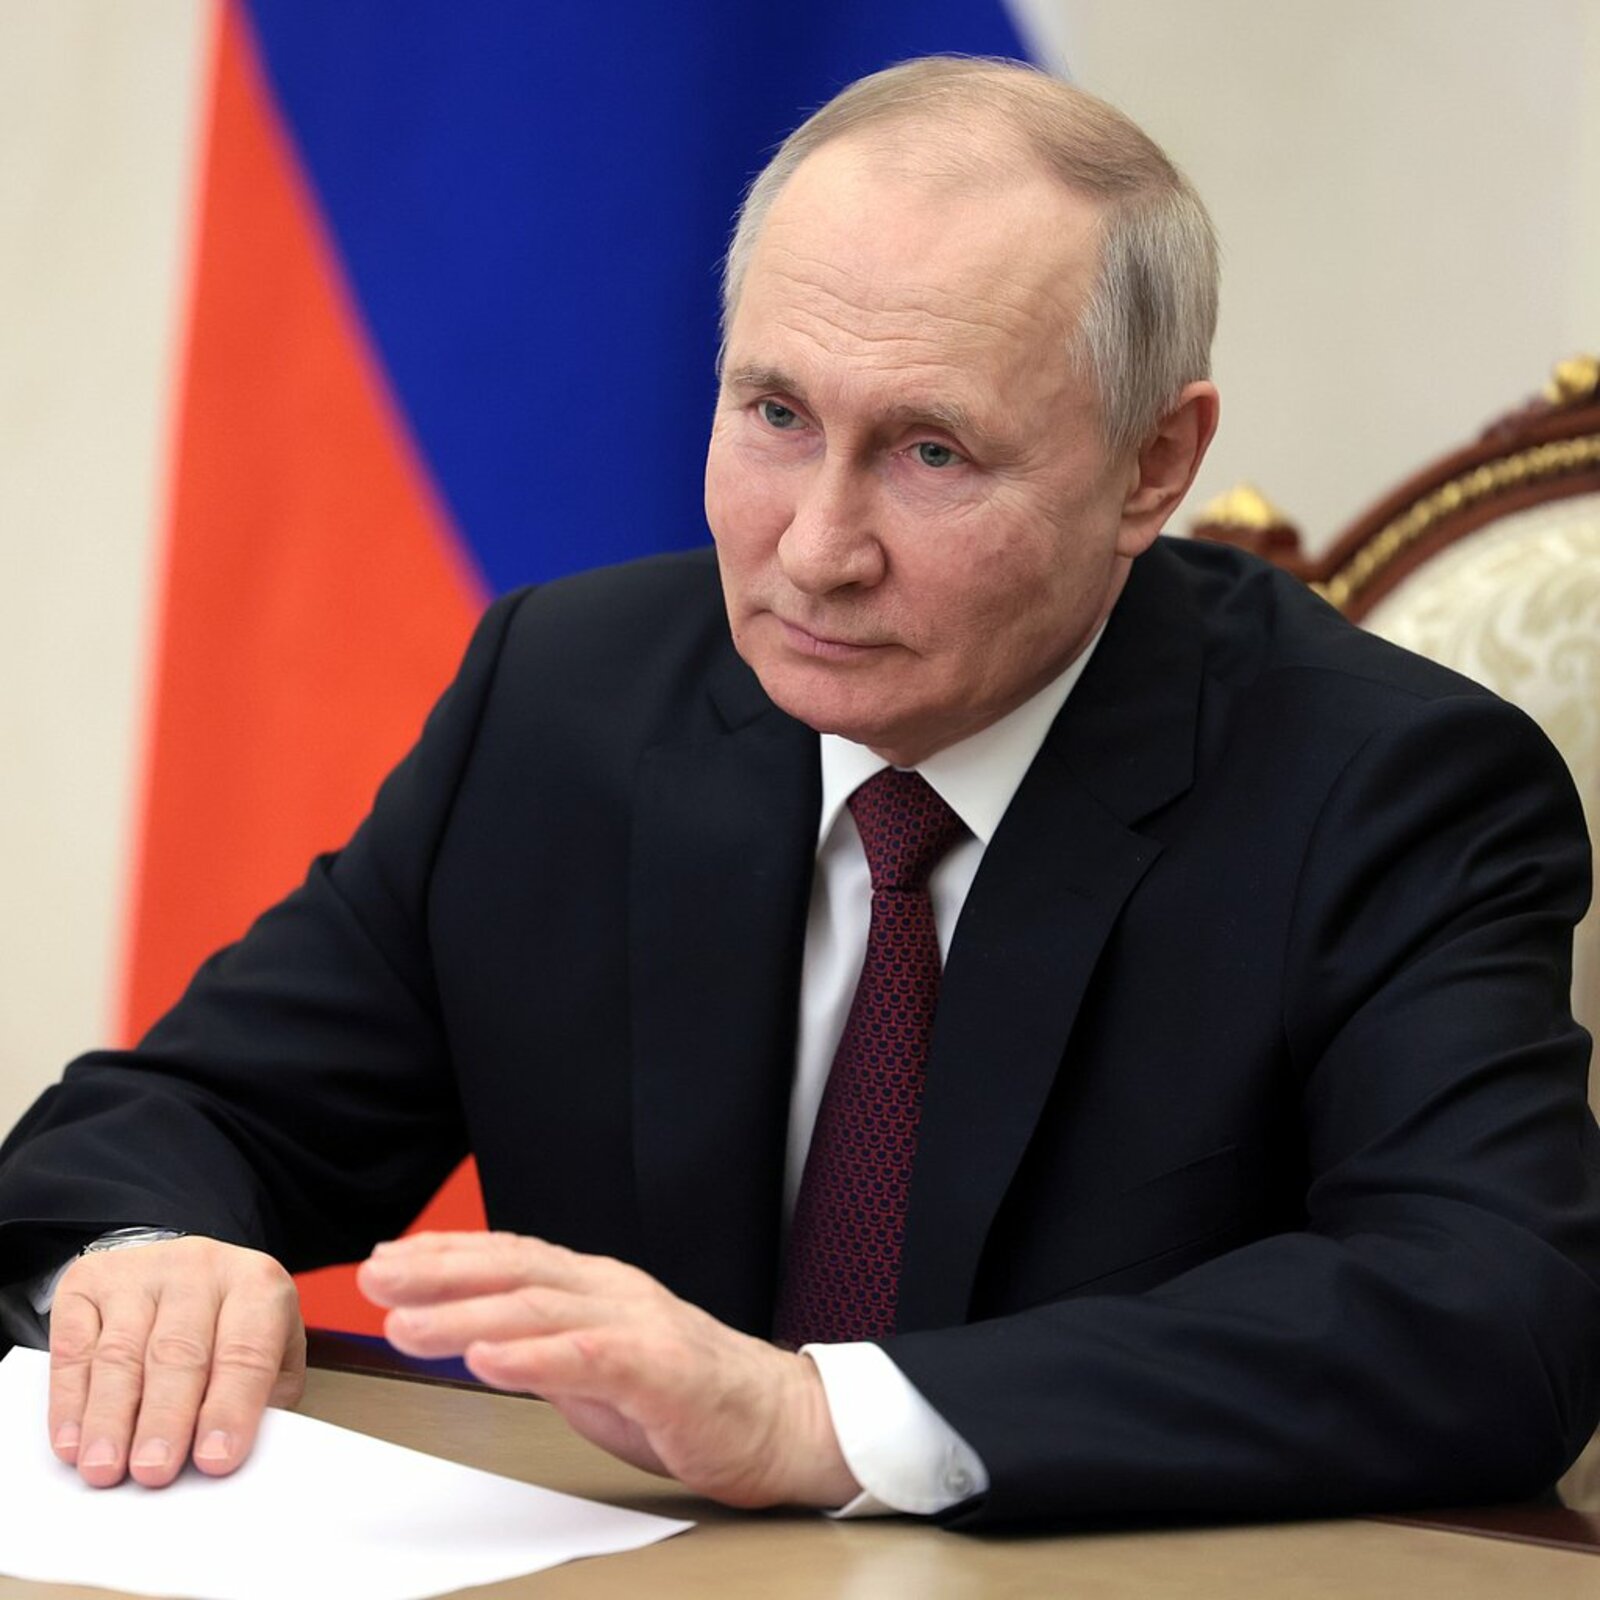 Путин подписал закон о запрете рекламы на ресурсах иностранных агентов